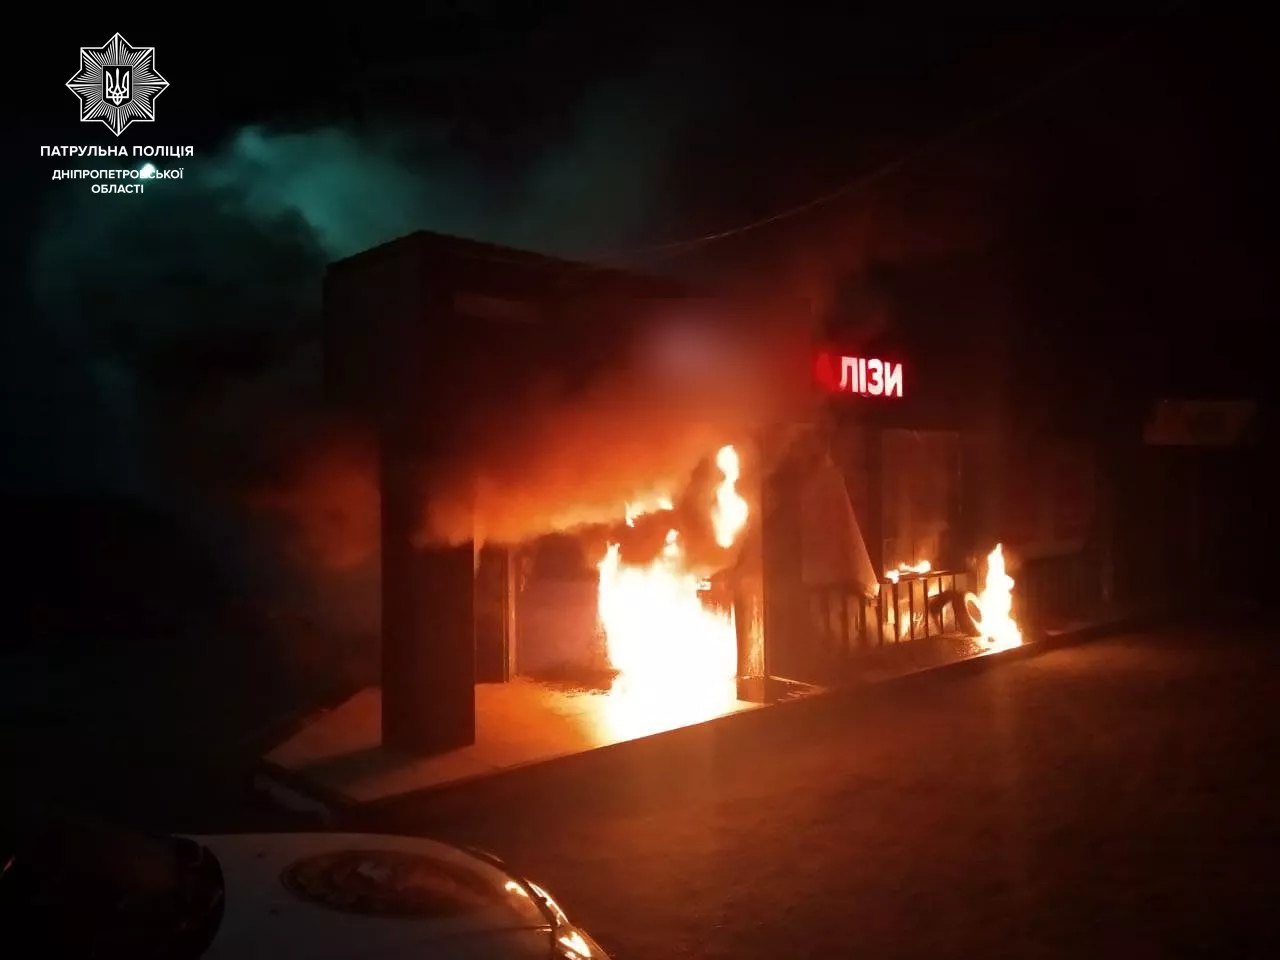 Пожар в частной медицинской лаборатории. Фото: патрульной полиции Днепропетровской области